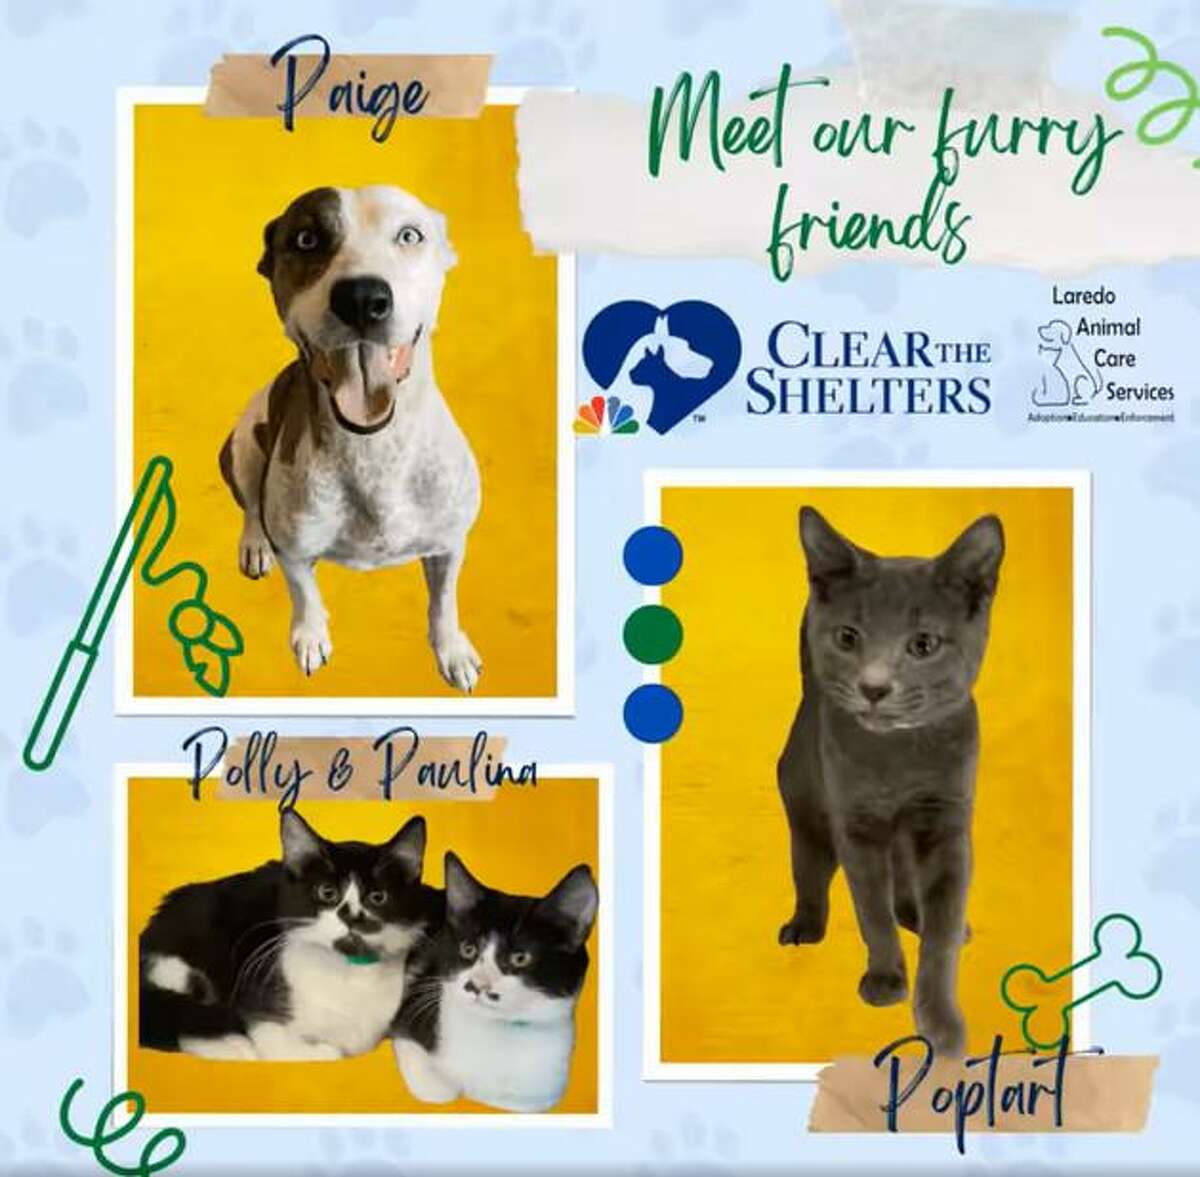 El evento Clear the Shelters Day 2022, se llevará a cabo el sábado 27 de agosto en las instalaciones de Laredo Animal Care Services, 5202 Maher Ave. Las adopciones de mascotas serán totalmente gratuitas durante ese día.